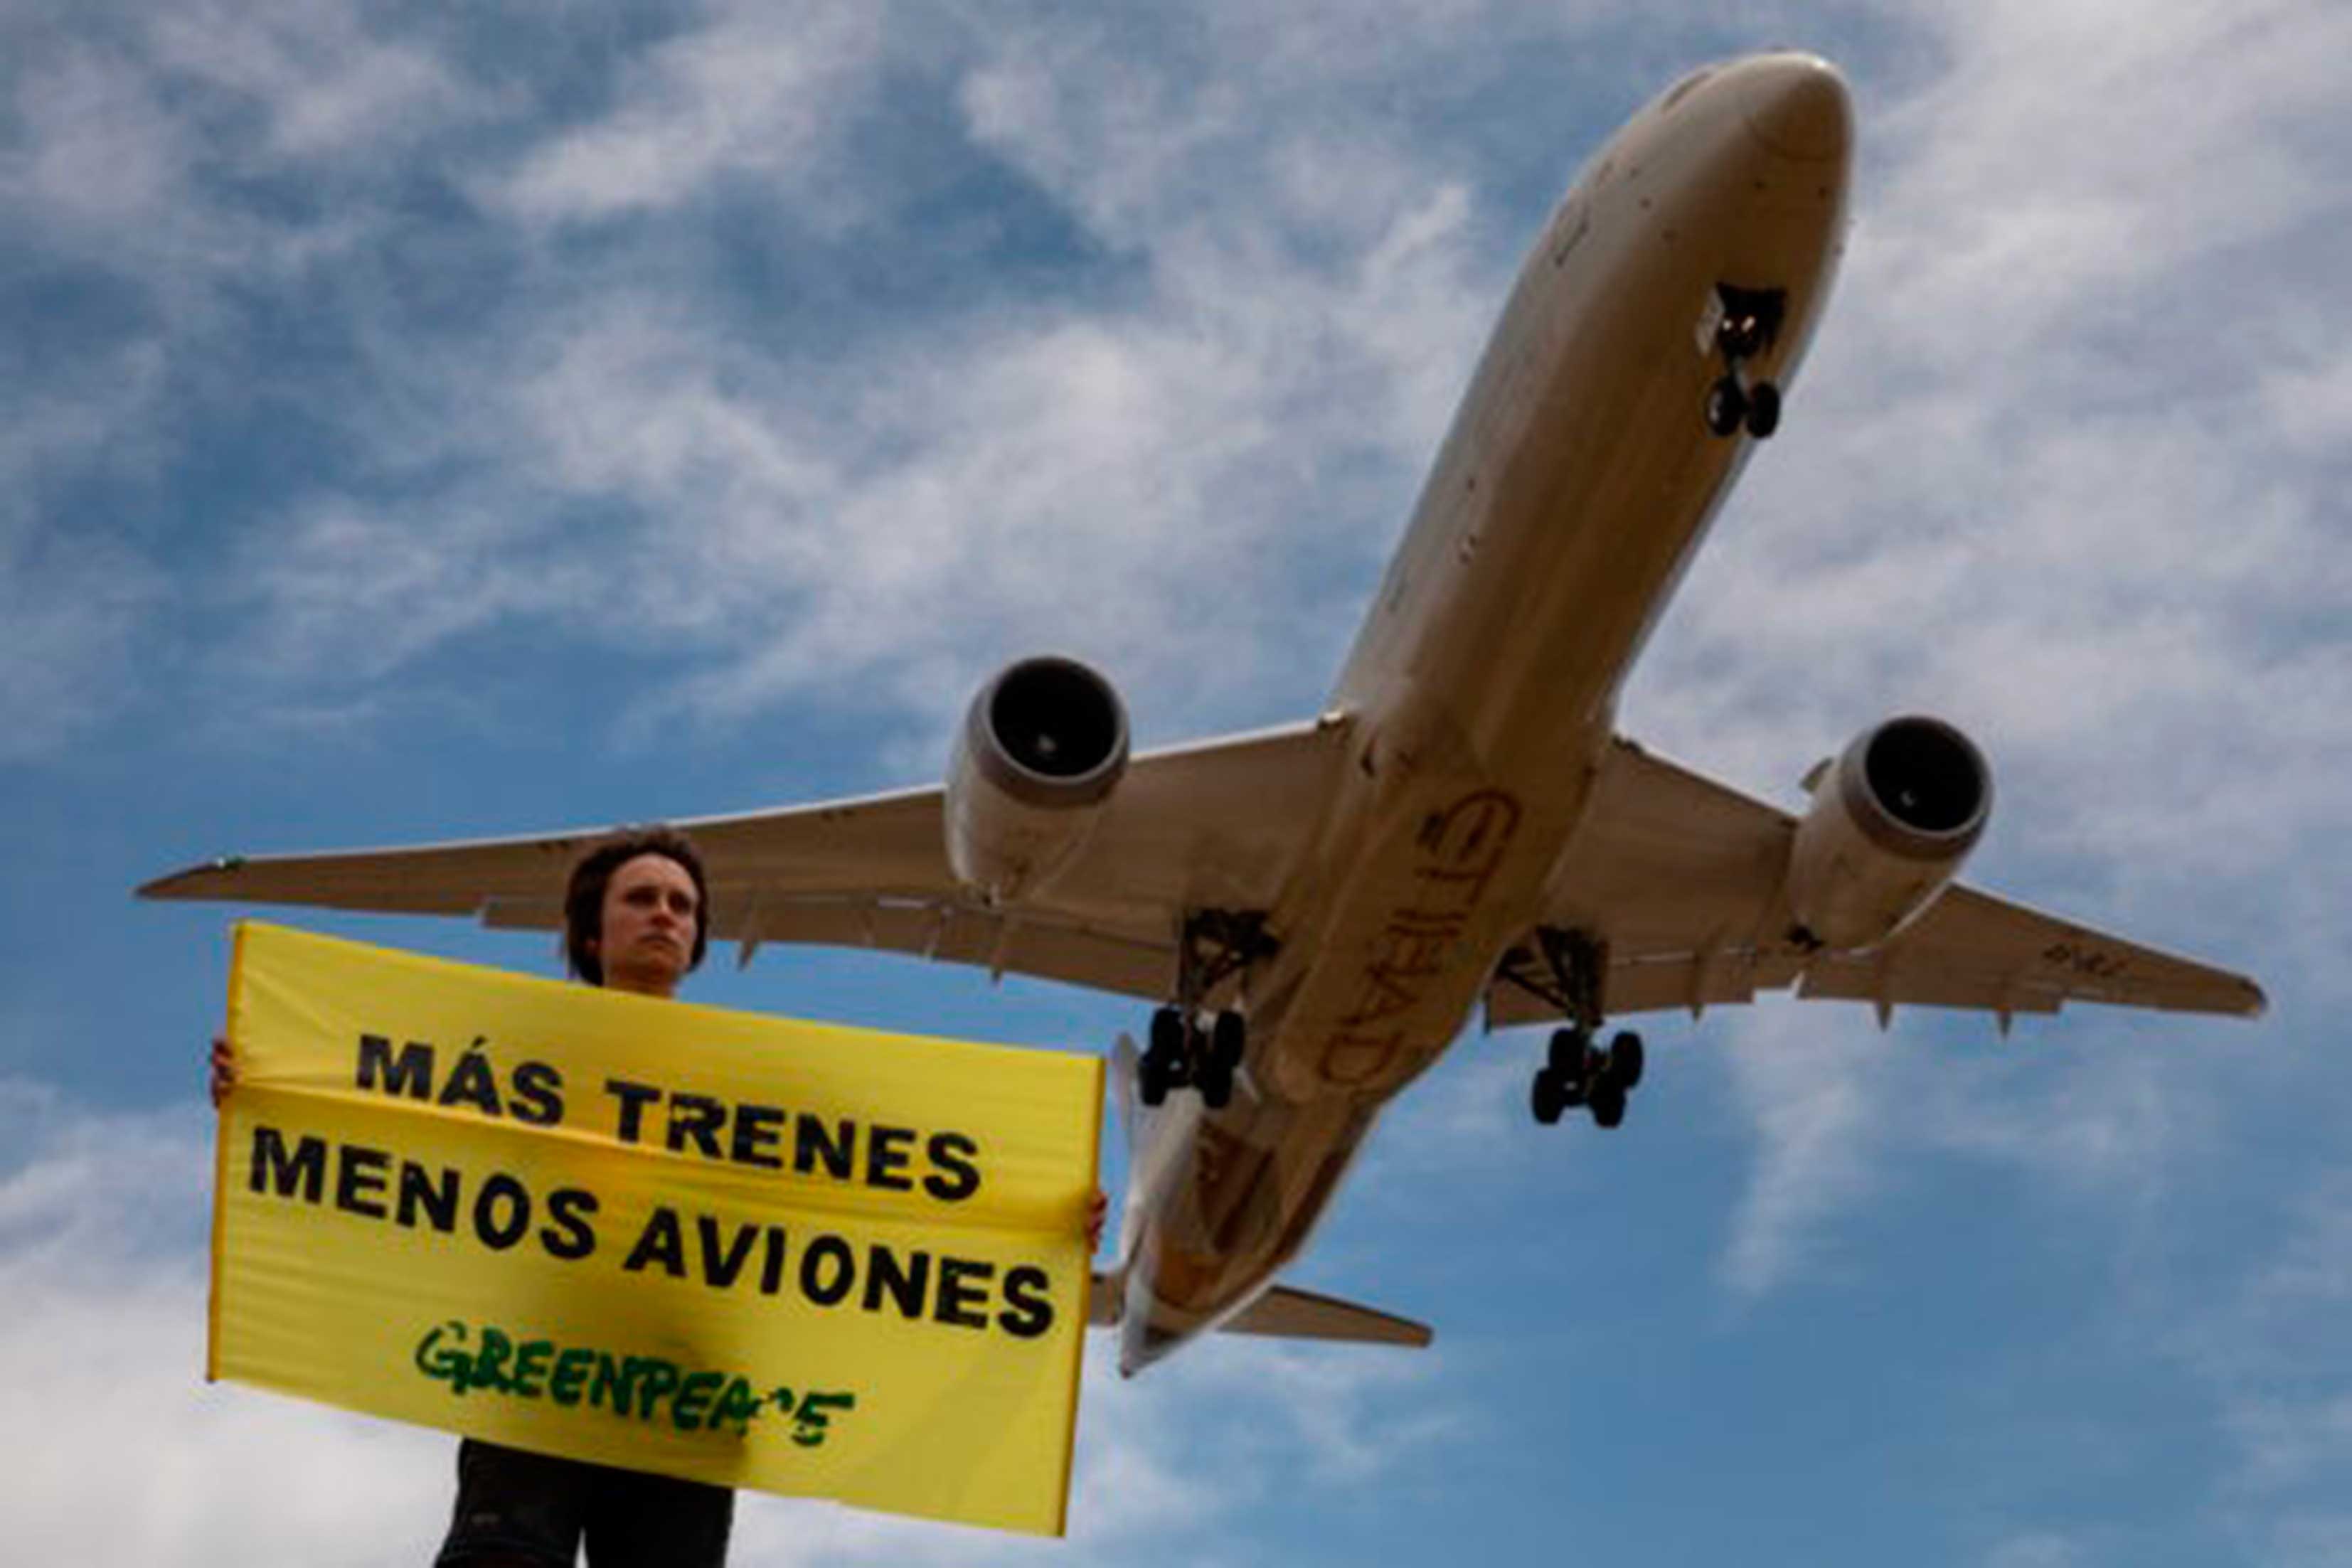 Greenpeace denuncia chanchullos en las subvenciones encubiertas a vuelos no rentables en plena emergencia climática